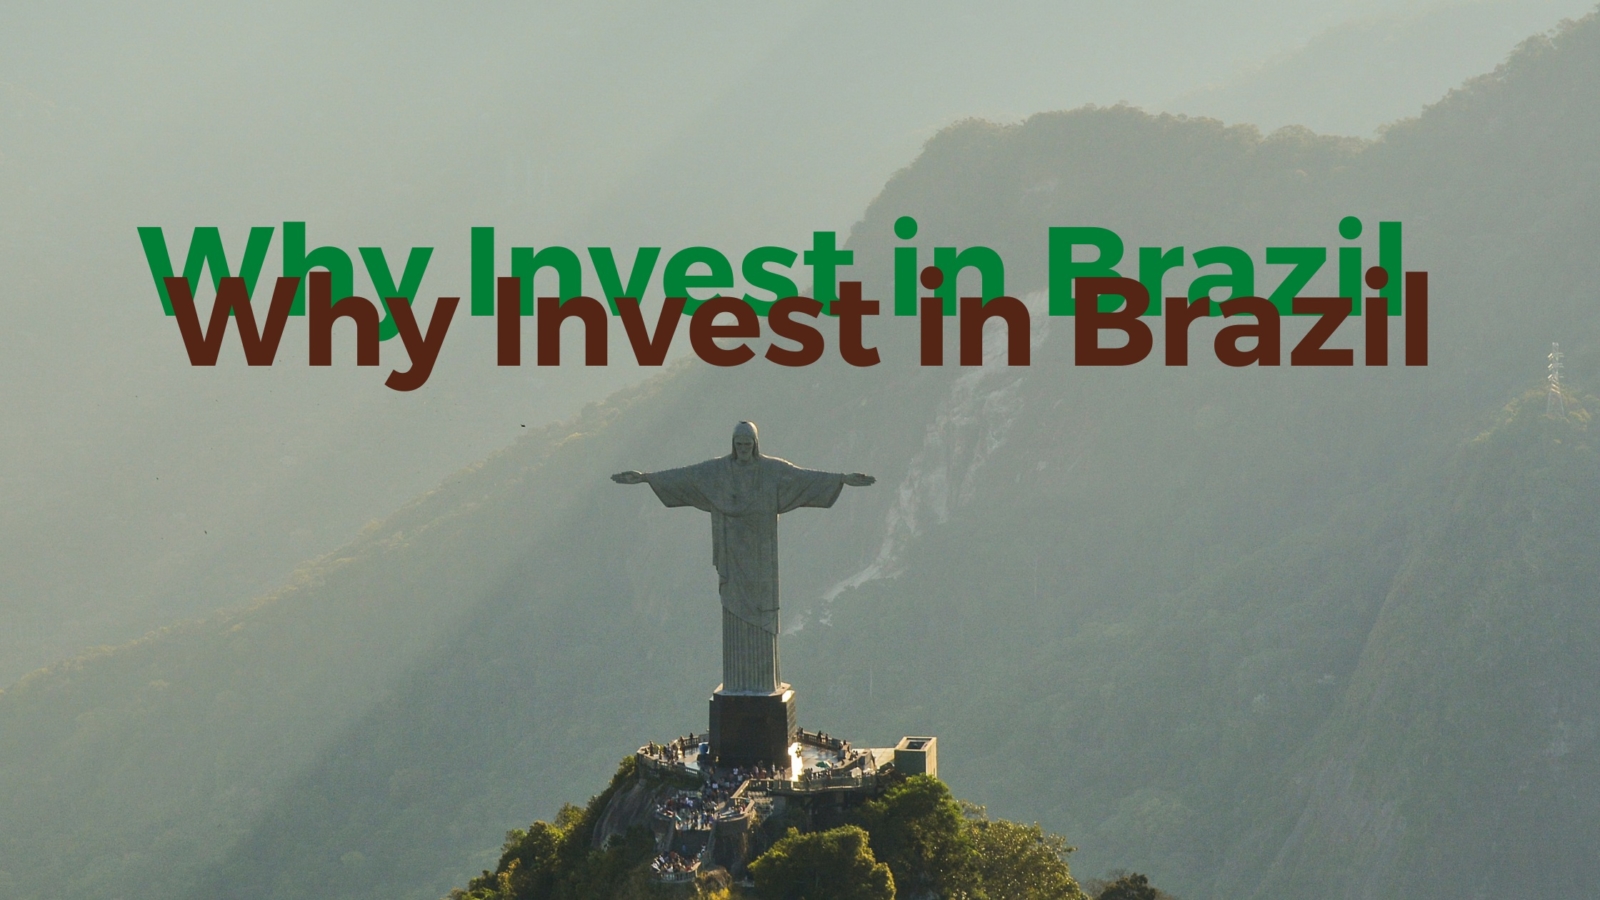 Invest In Brazil